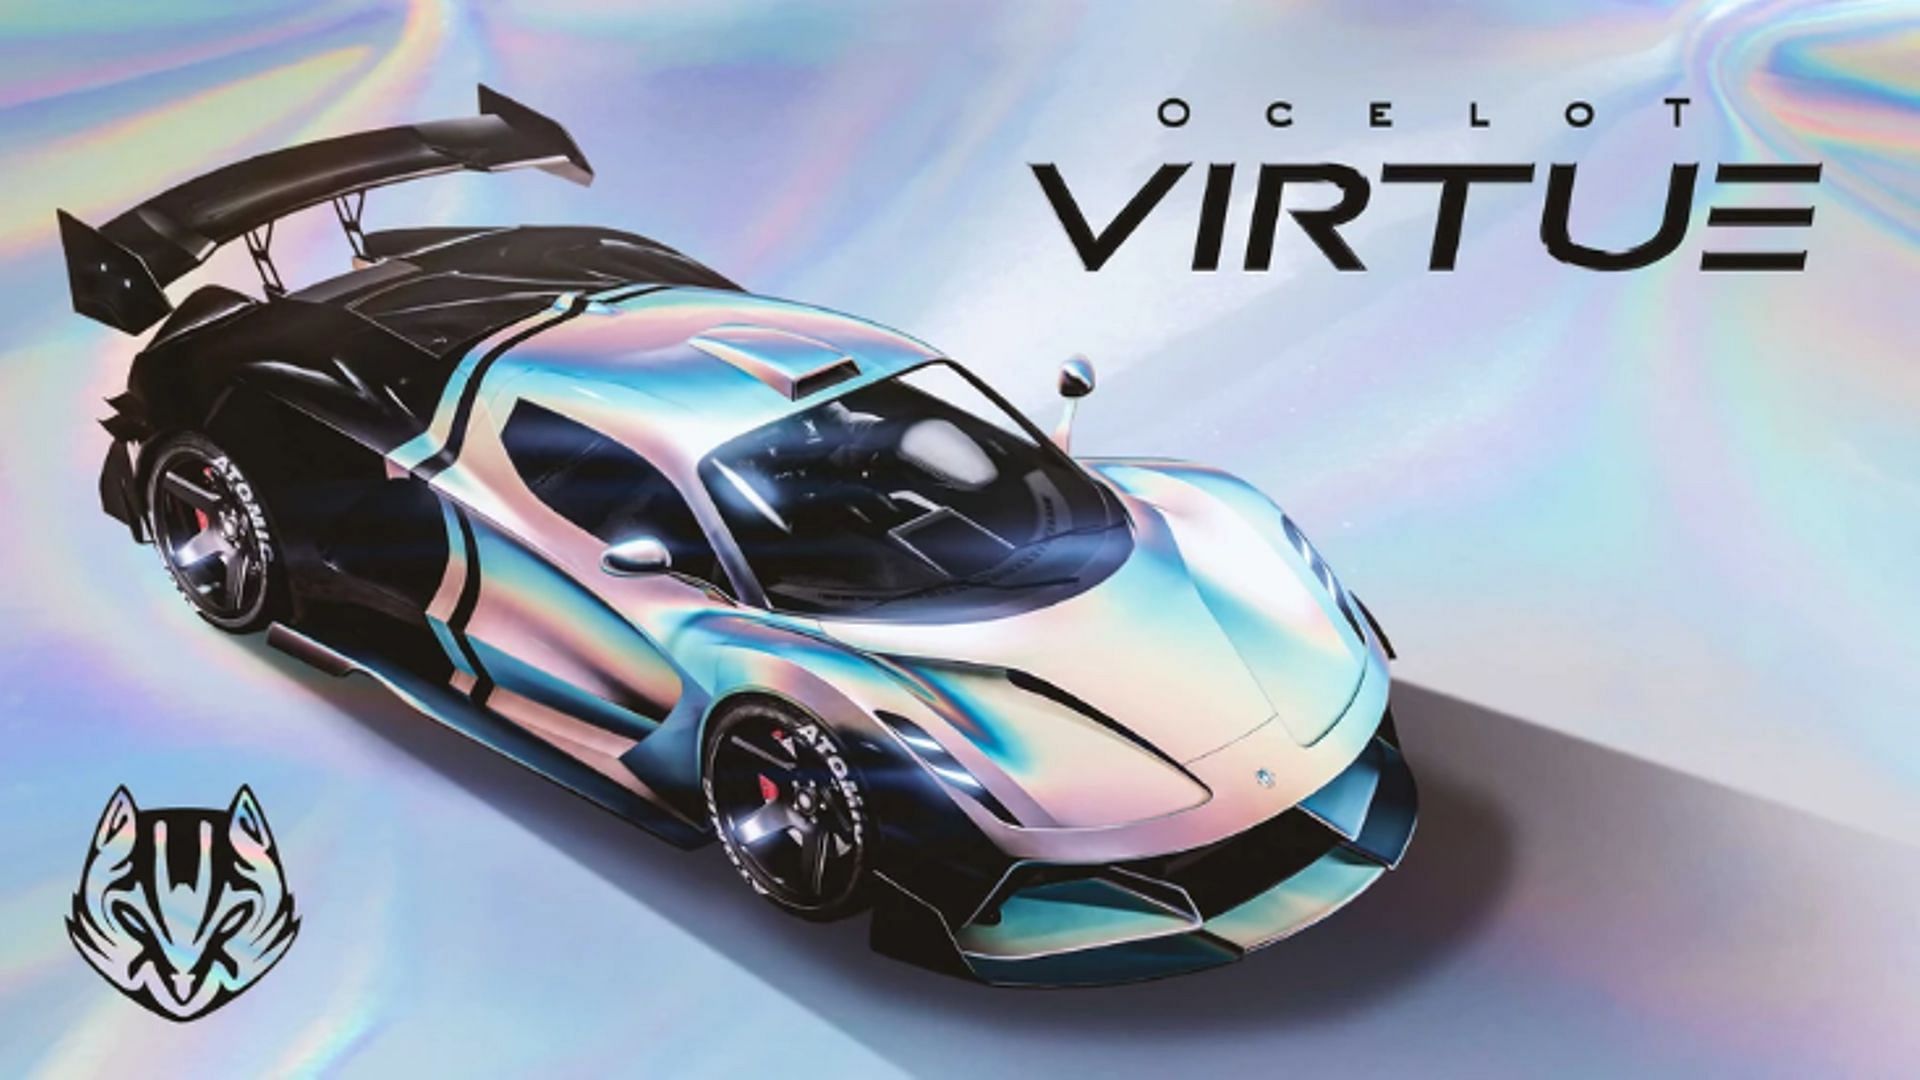 Ocelot Virtue (Image via Rockstar Games)